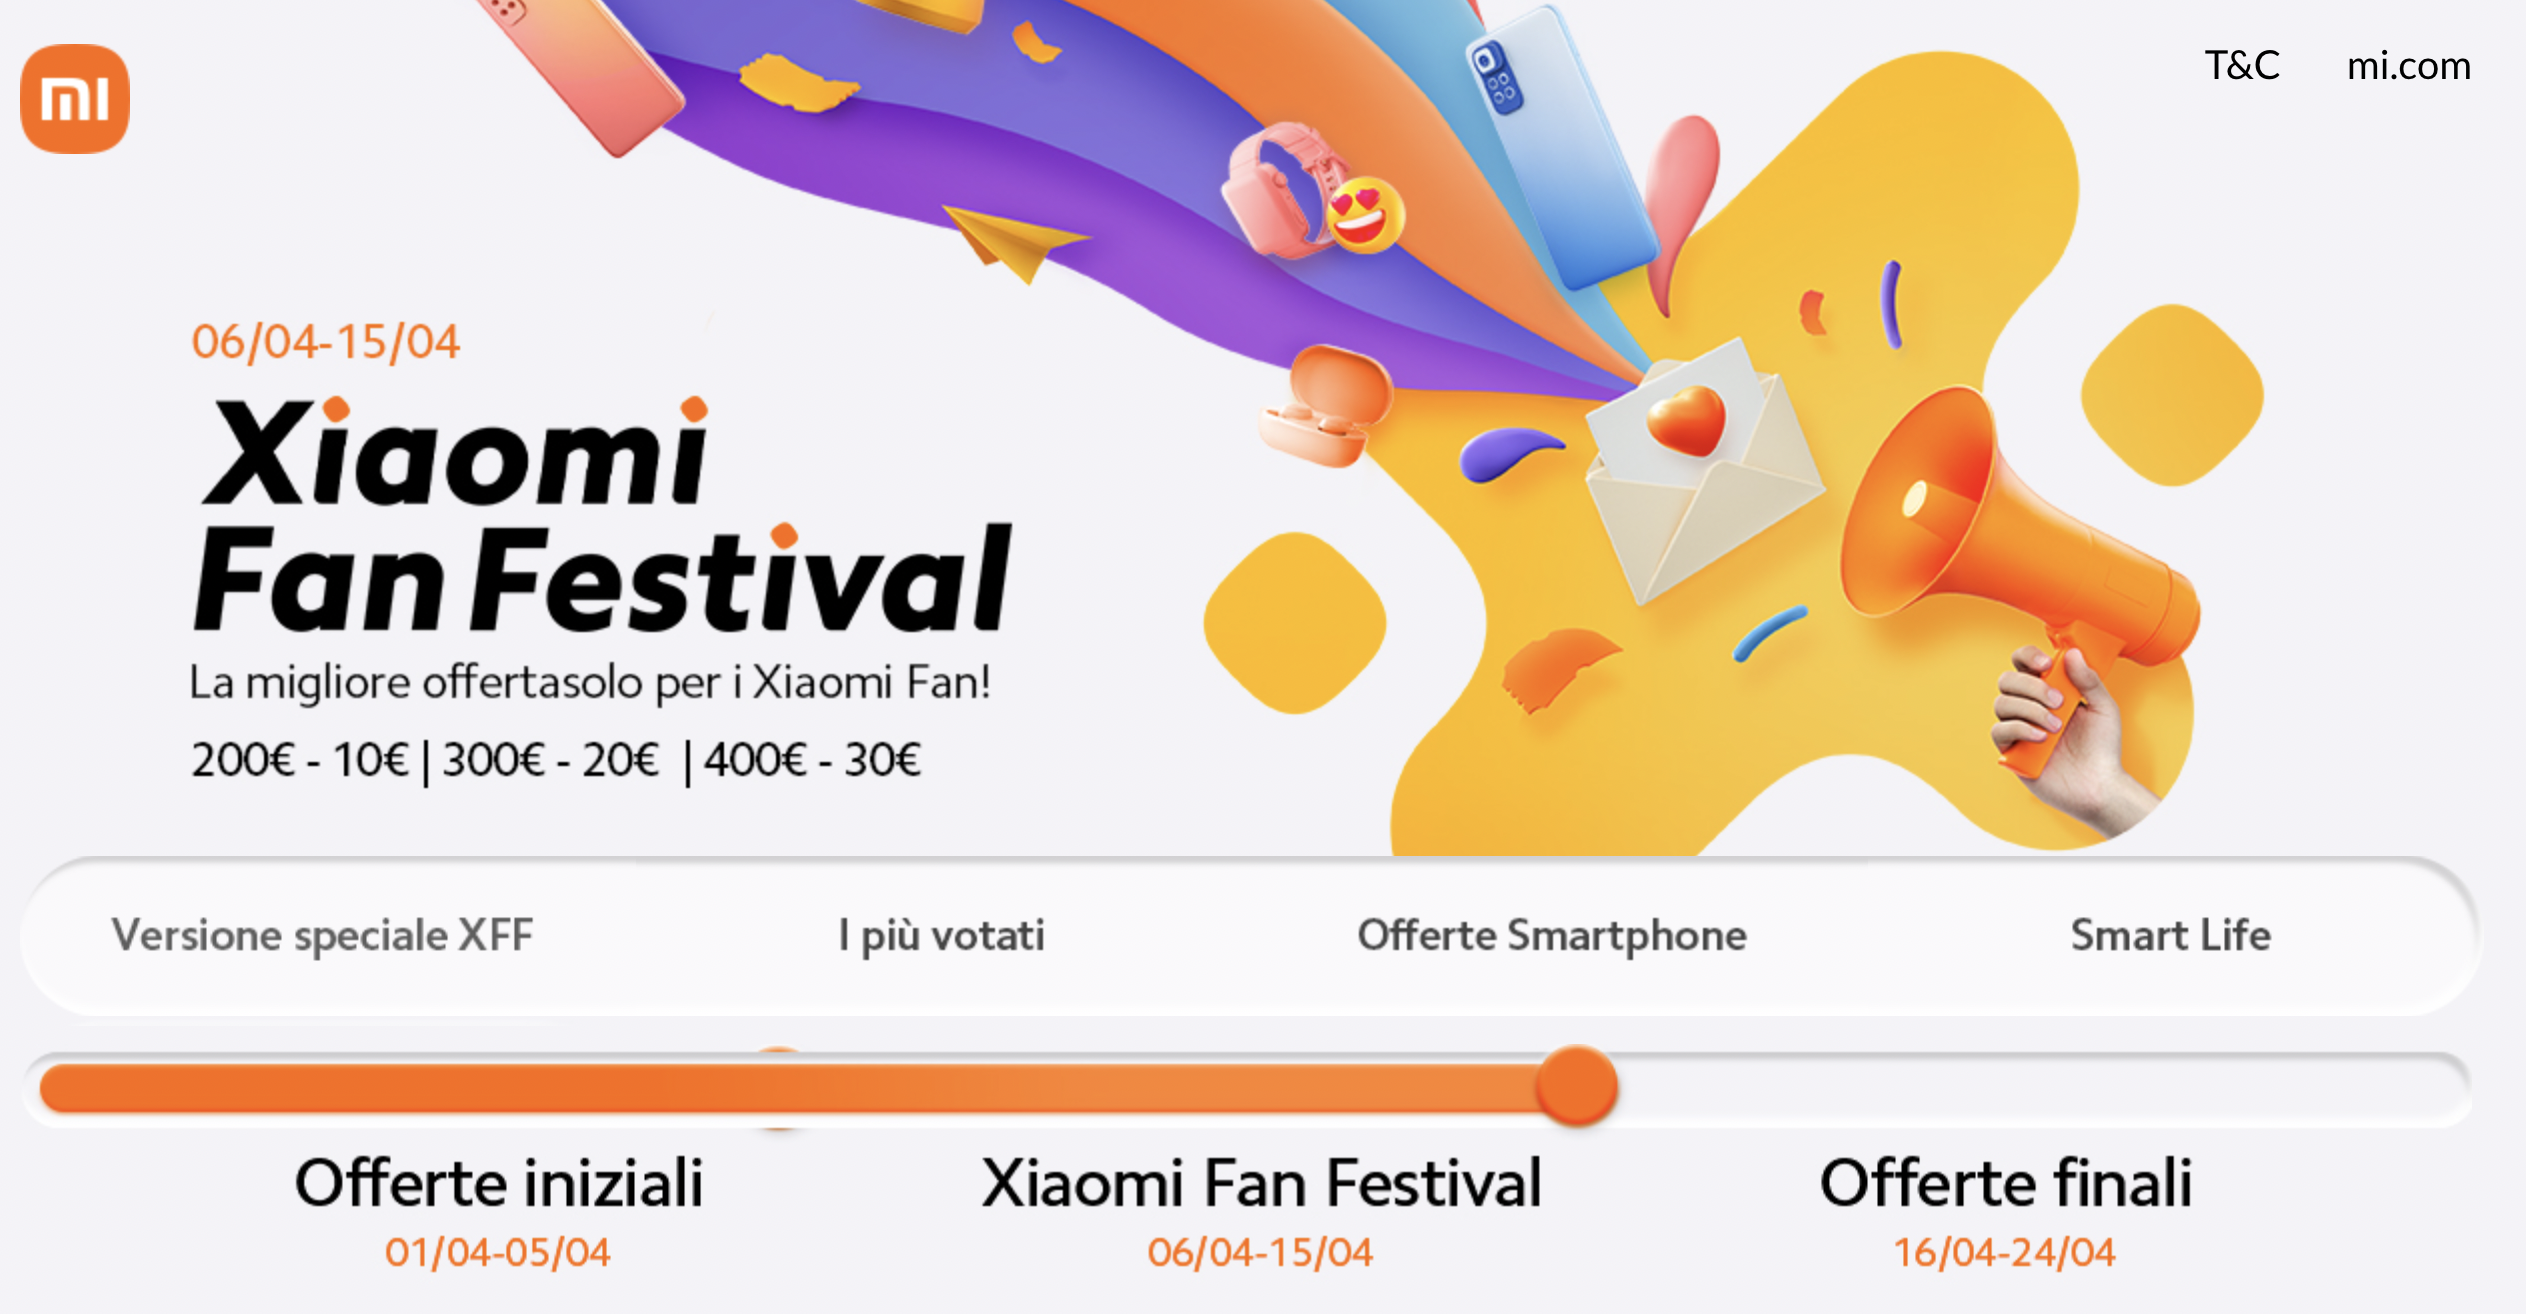 Offerte Xiaomi Fan Festival